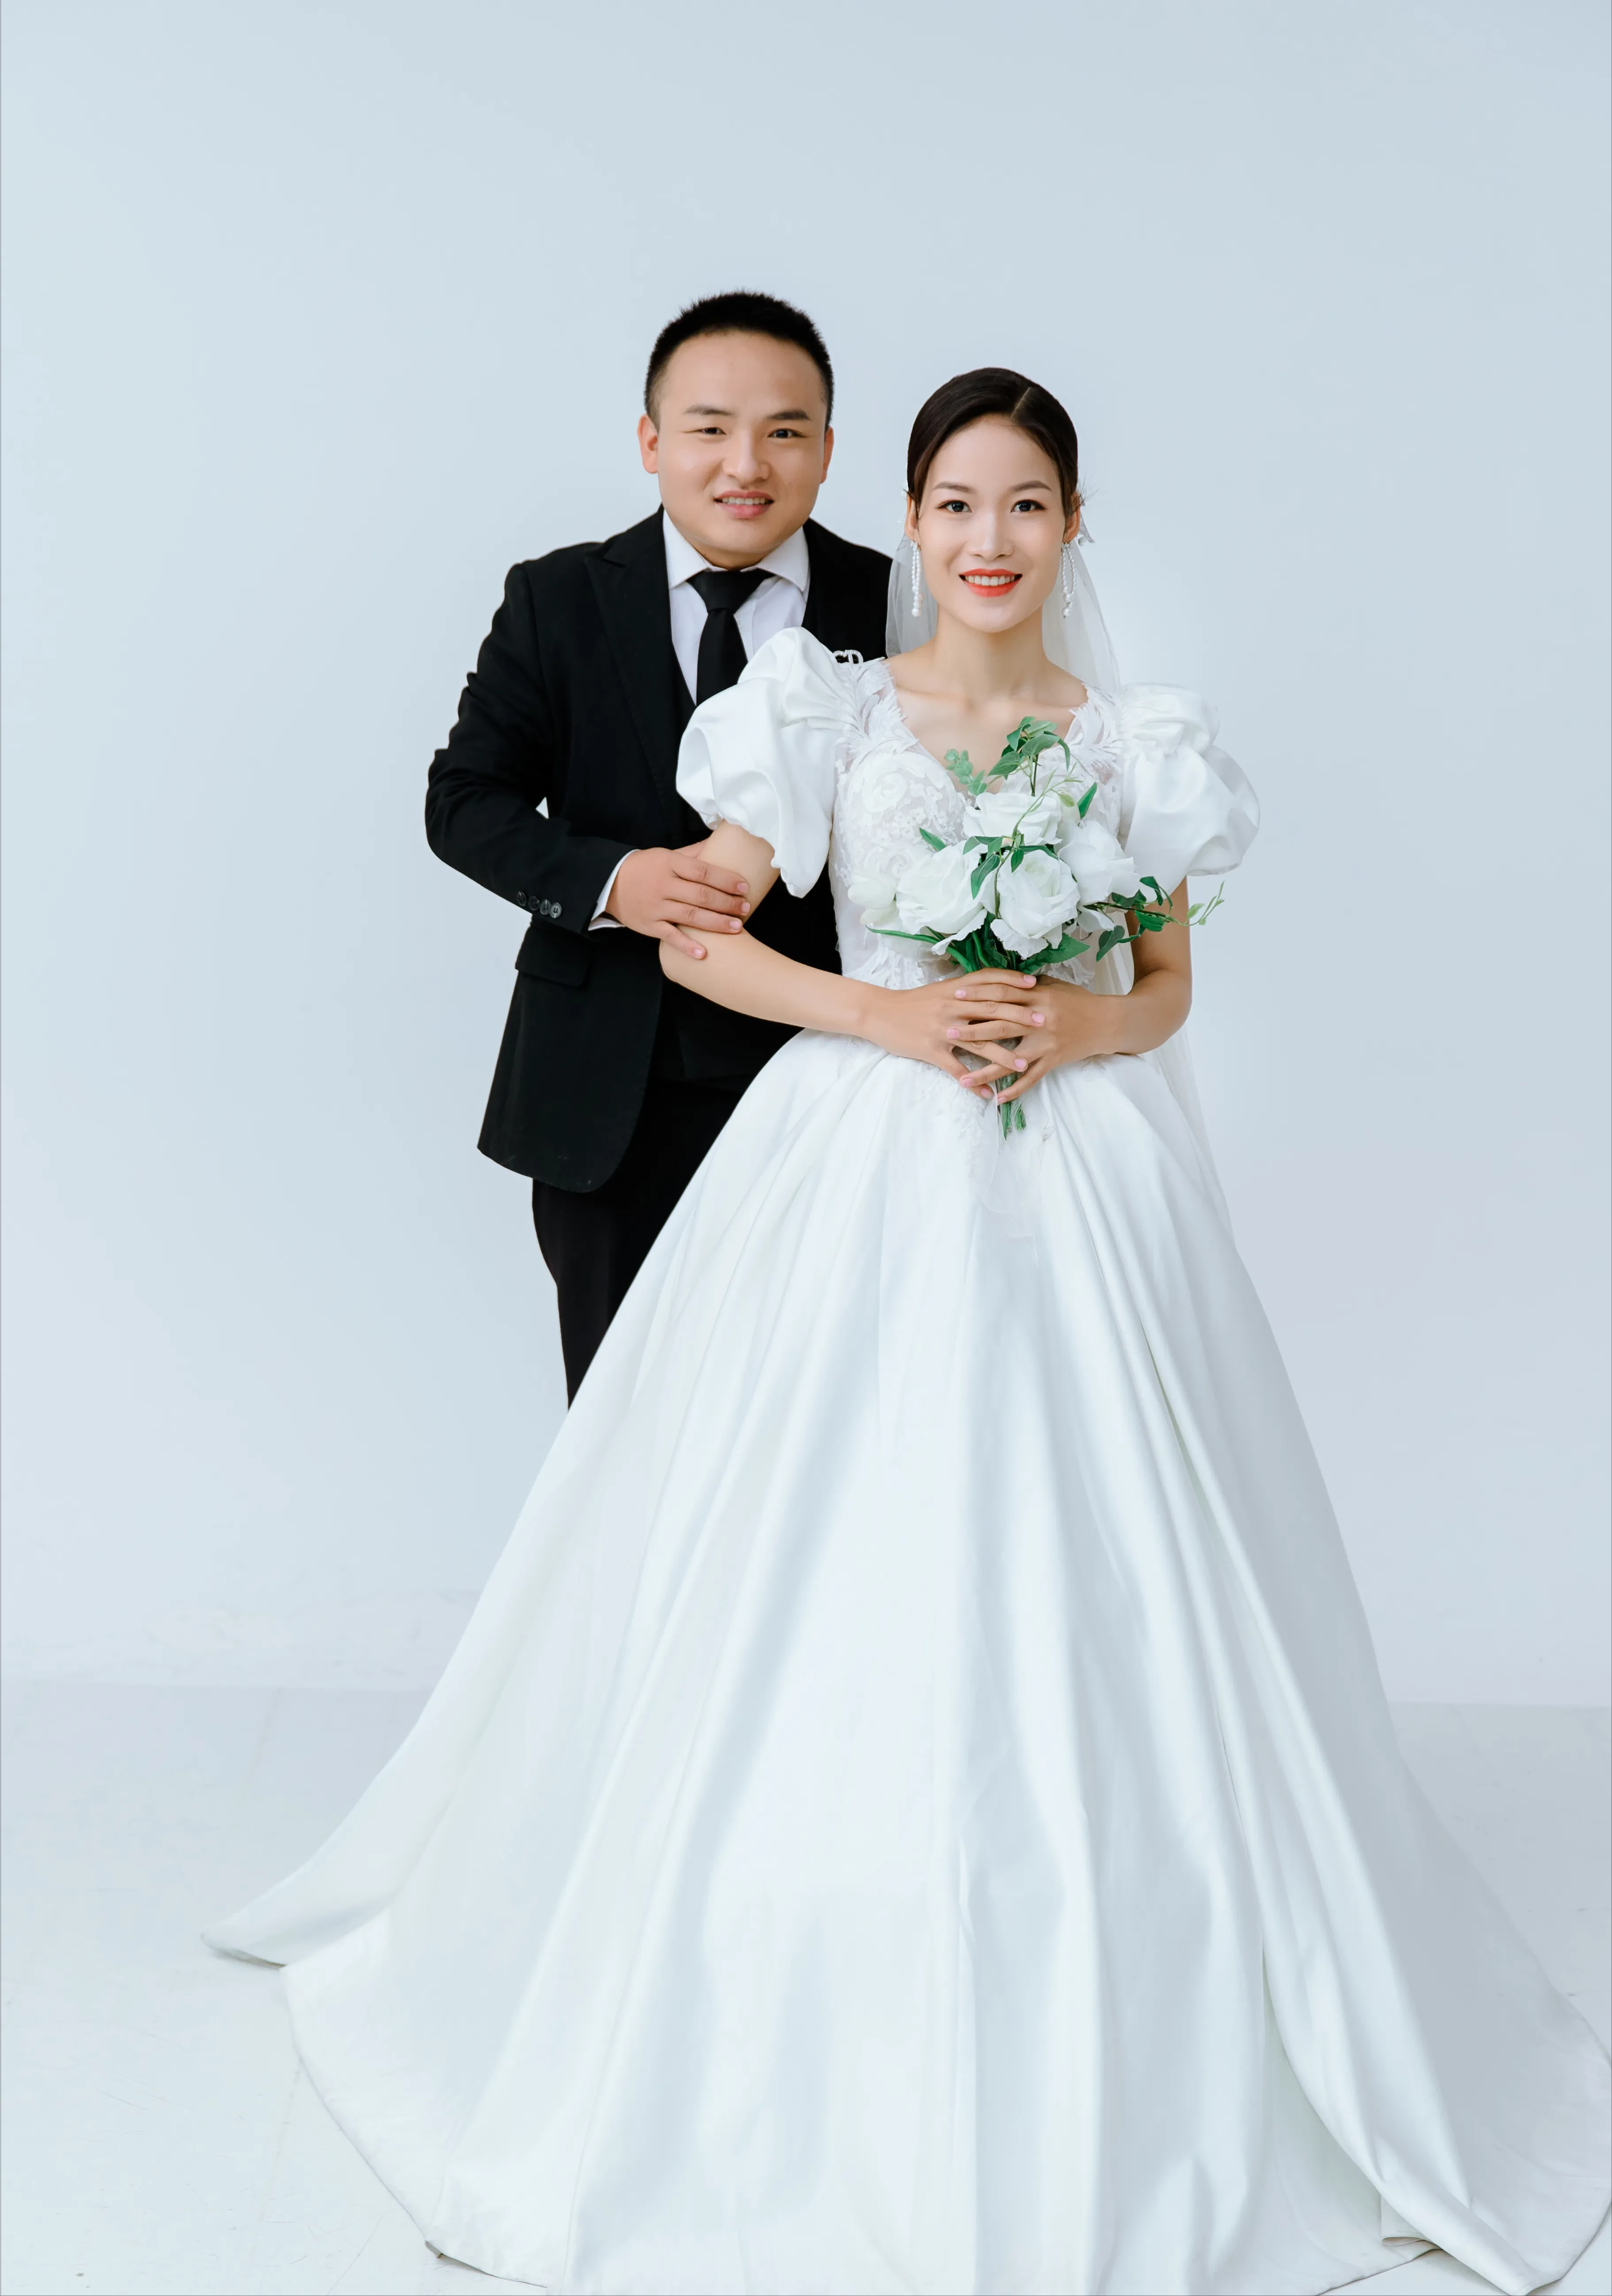 老挝结婚年龄图片